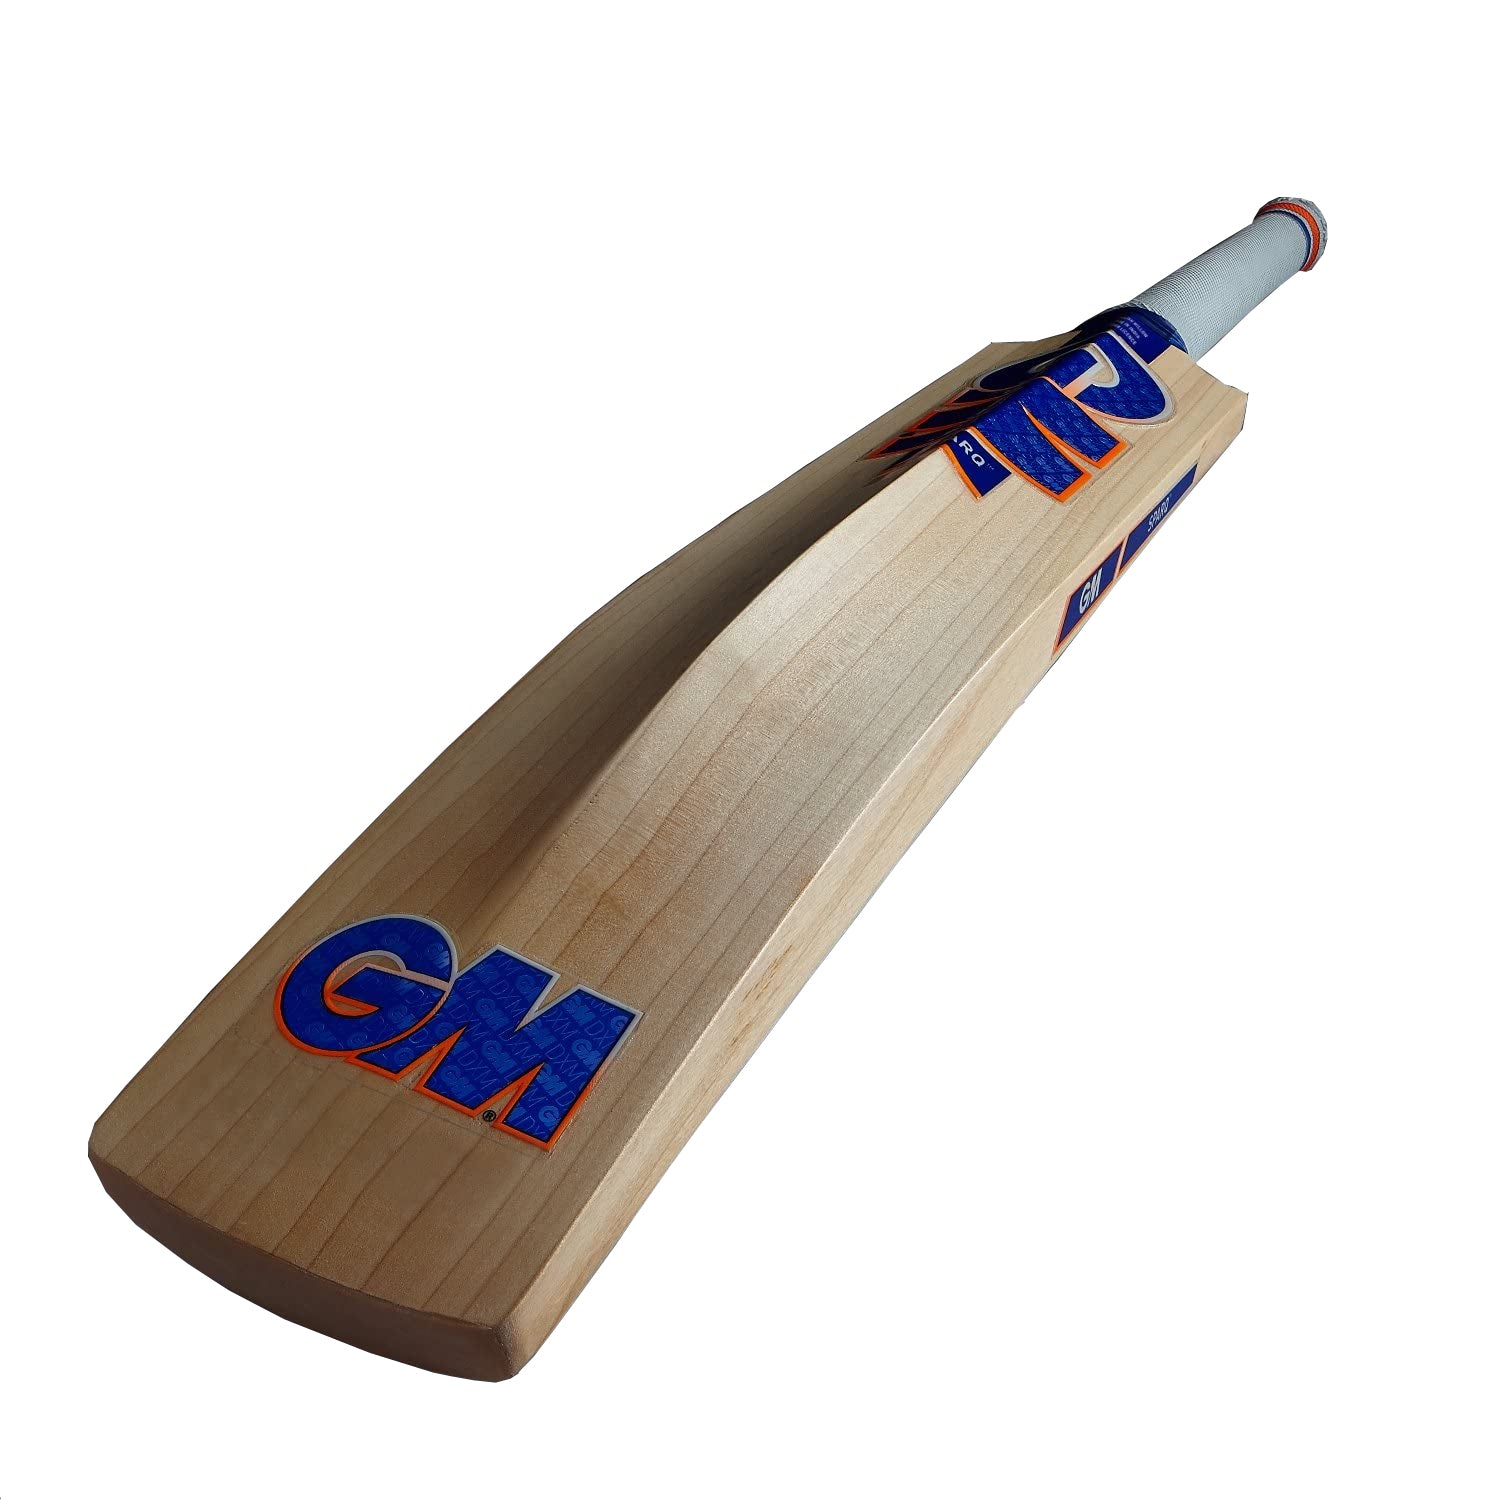 GM Sparq 707 English Willow Cricket Bat - Best Price online Prokicksports.com